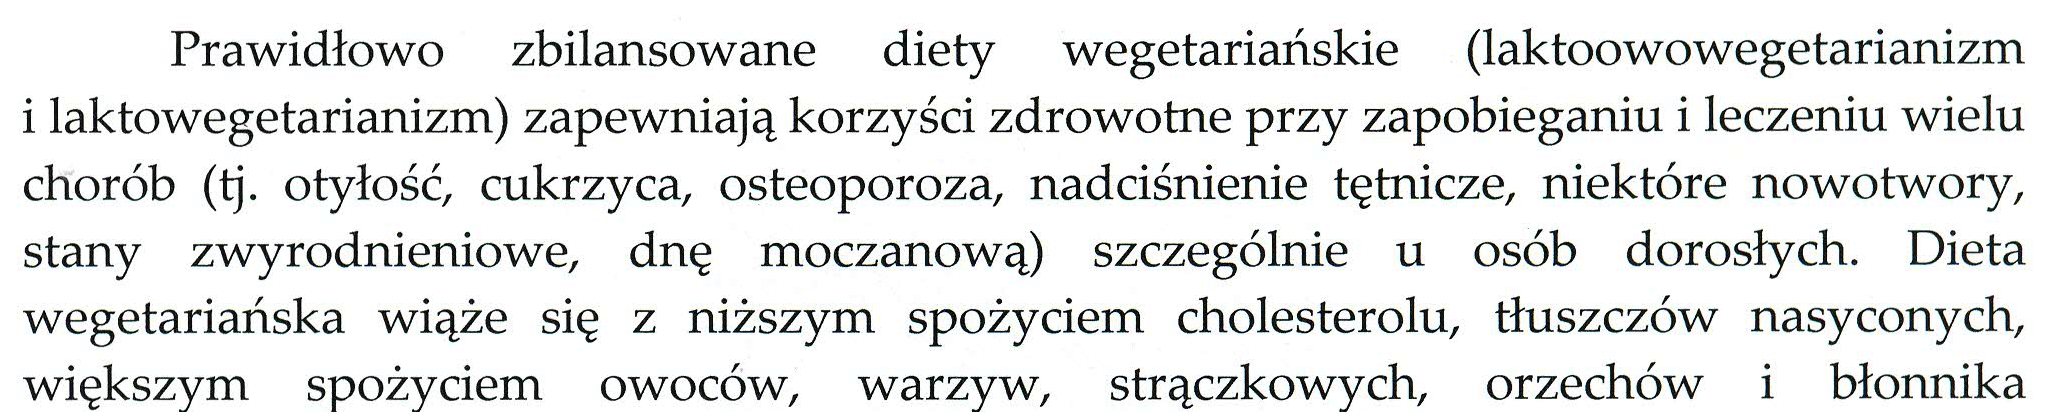 Stanowisko Instytutu Żywości i Żywienia z dnia 12.11.12 r. dotyczące stosowania diet wegetariańskich Jarosz M.